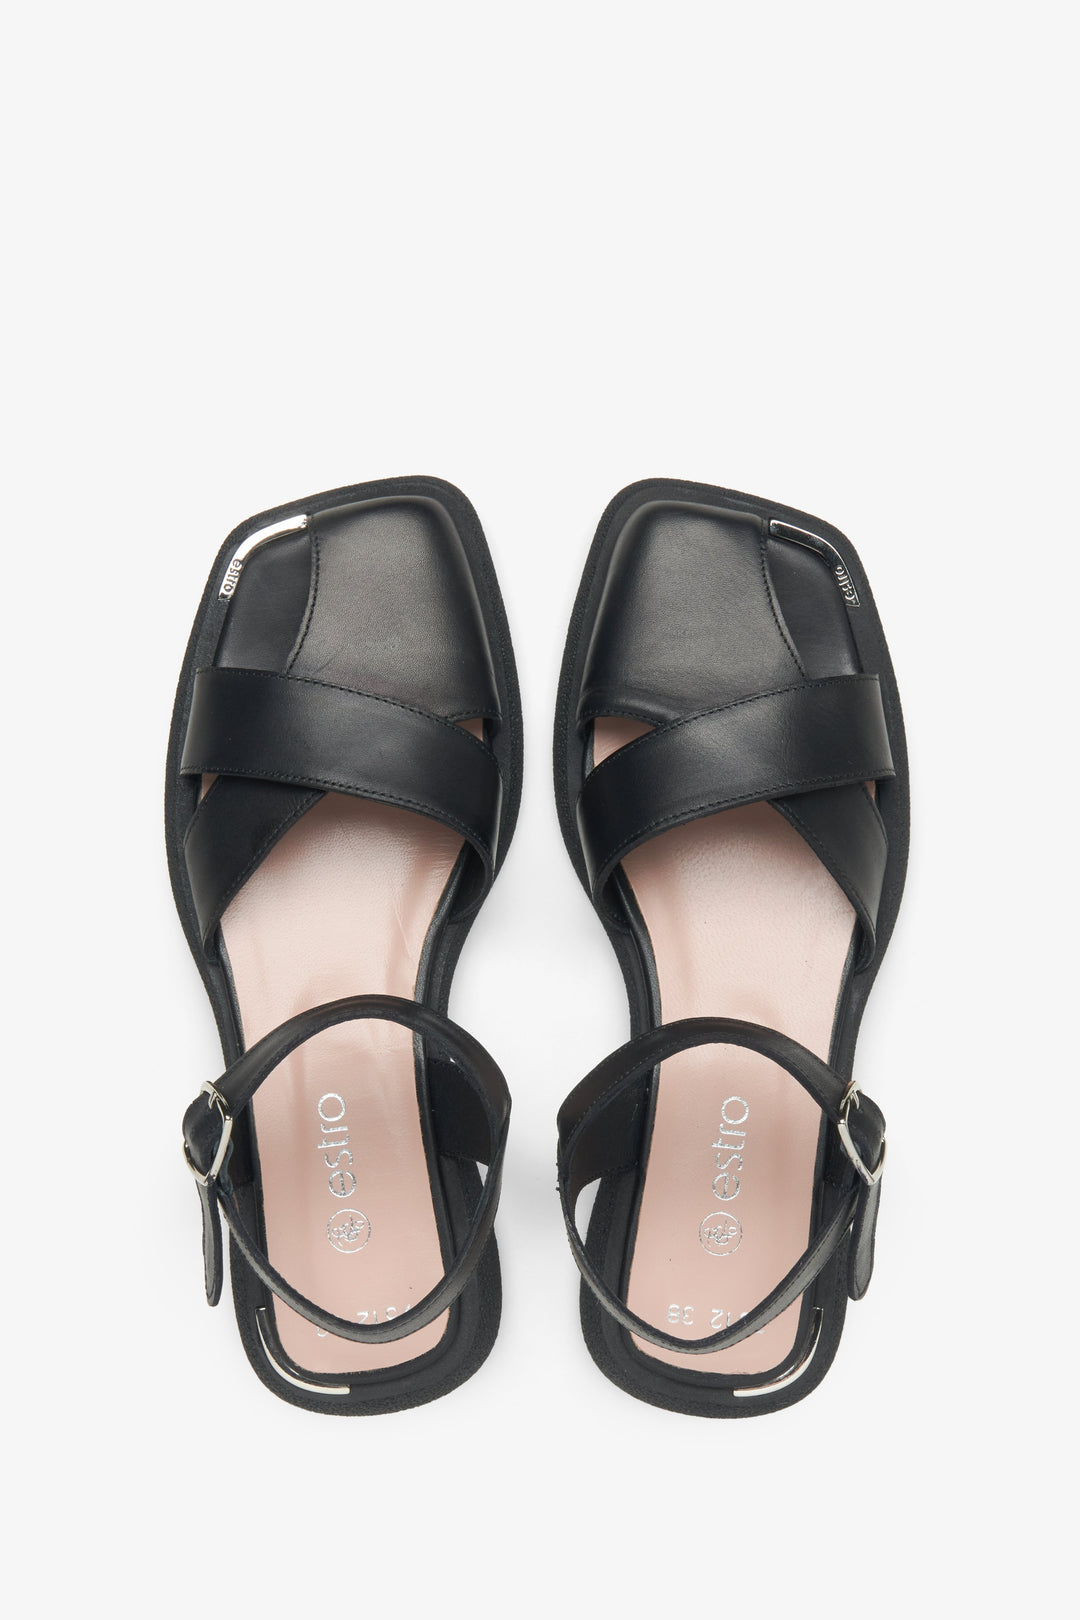 Damskie skórzane sandały w kolorze czarnym Estro - prezentacja modelu z góry.